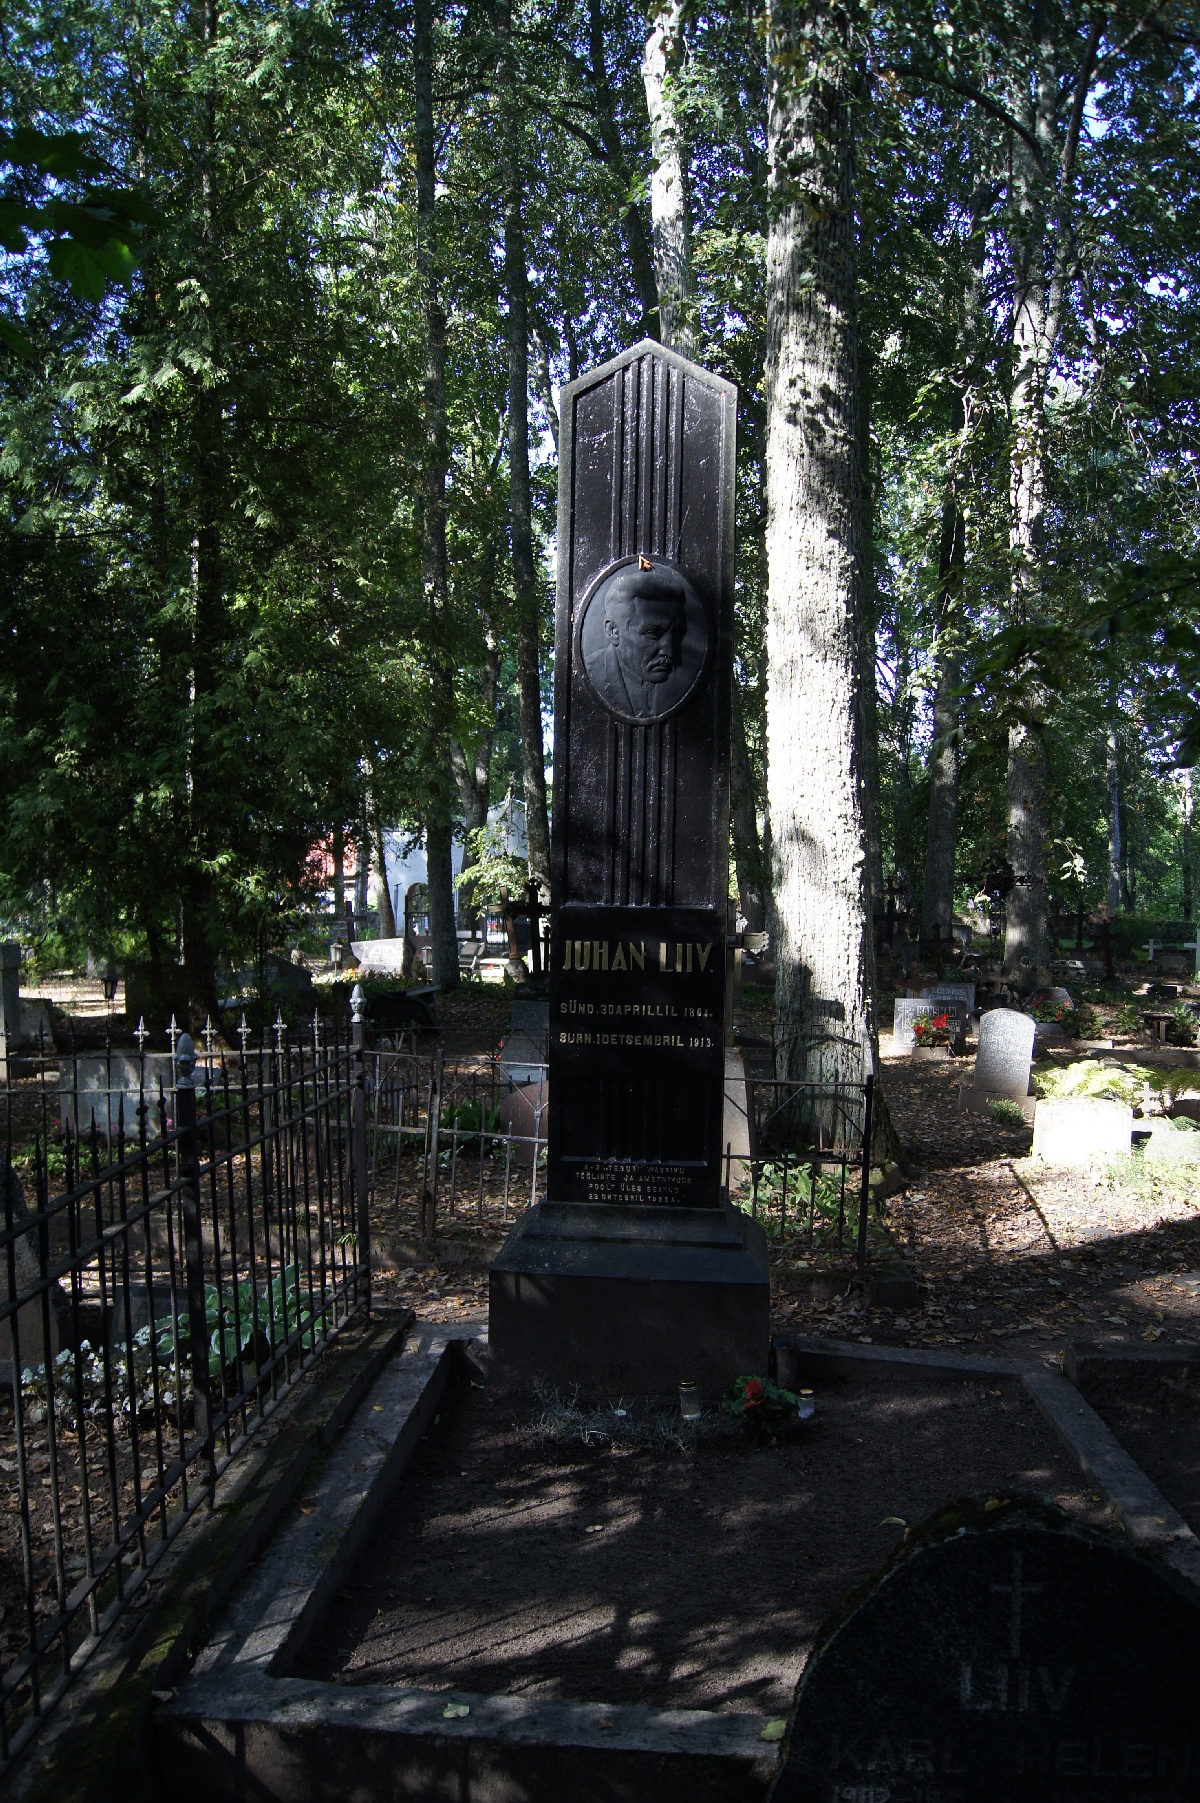 Kõrgeim kivi. Juhan Liiv. Alatskivi kalmistu.